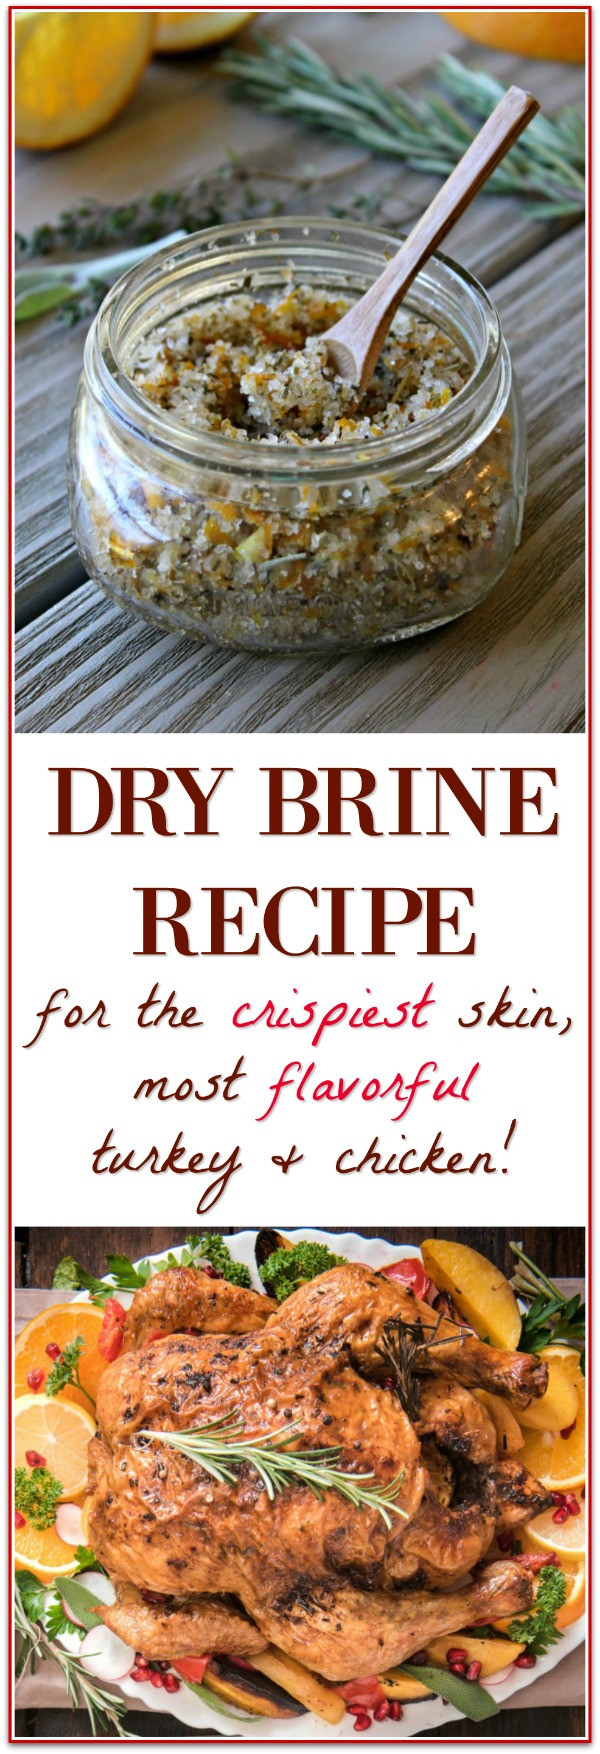 Turkey Dry Brine Recipe
 Dry Brine Turkey for the Best Thanksgiving Turkey